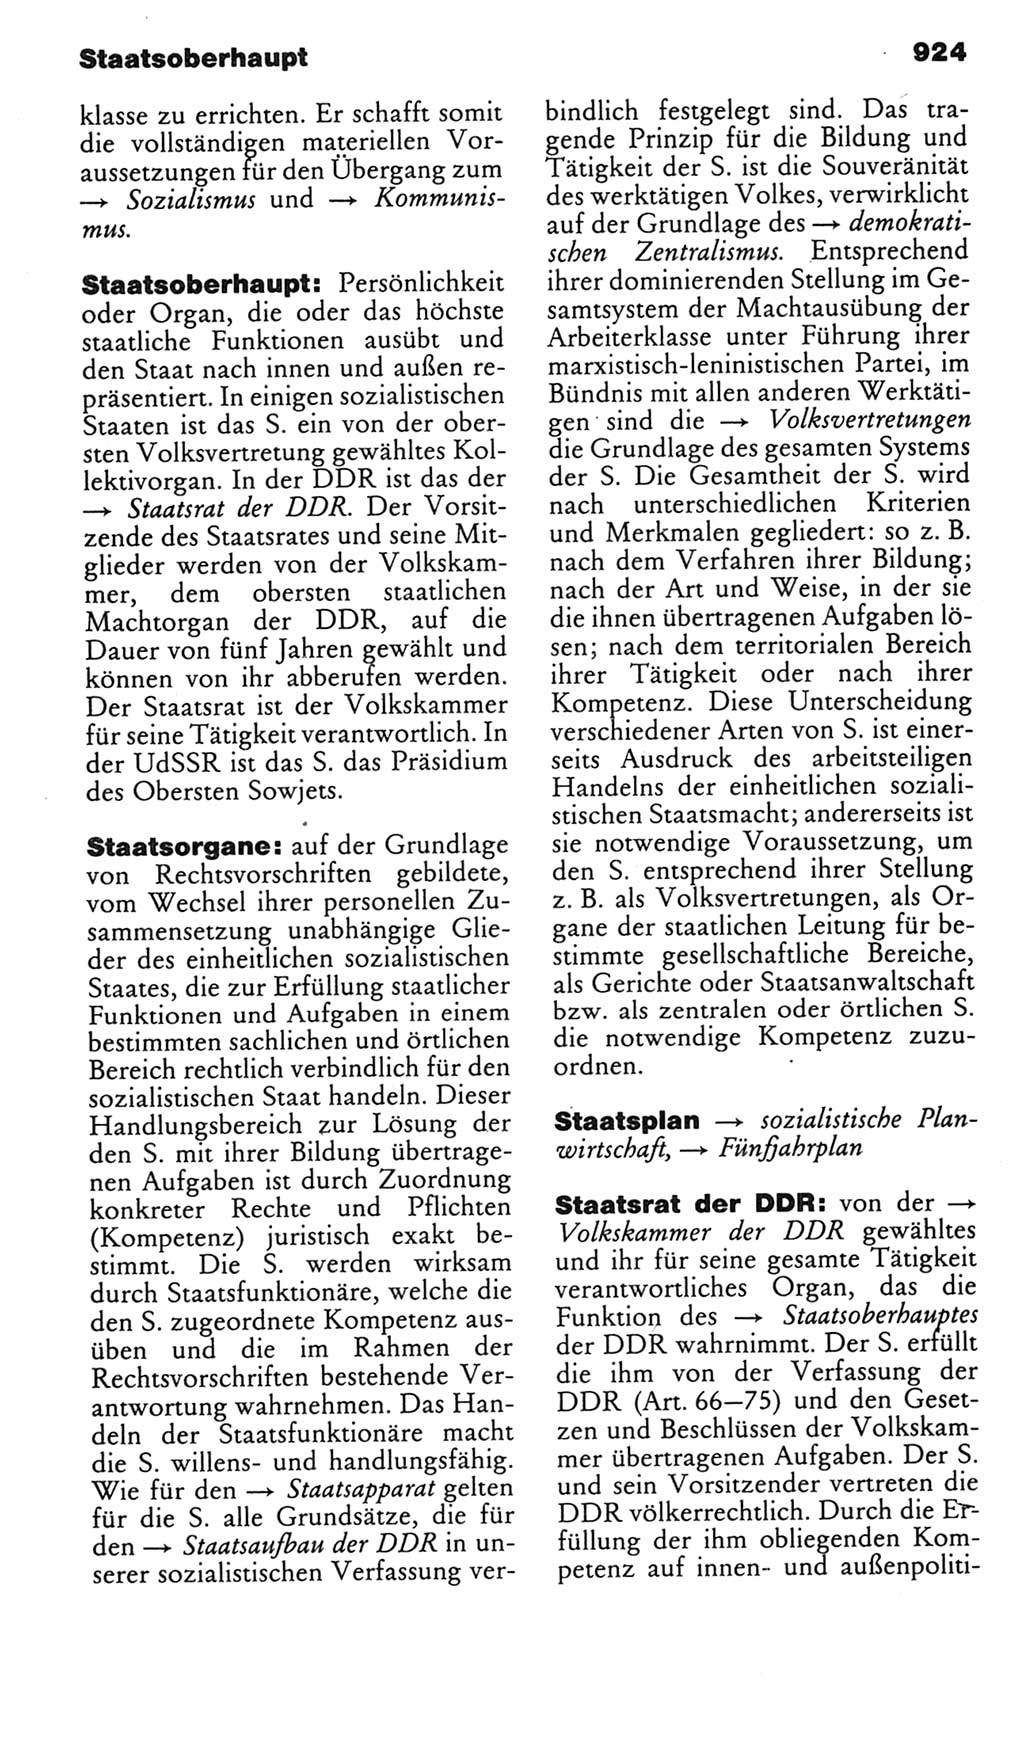 Kleines politisches Wörterbuch [Deutsche Demokratische Republik (DDR)] 1985, Seite 924 (Kl. pol. Wb. DDR 1985, S. 924)